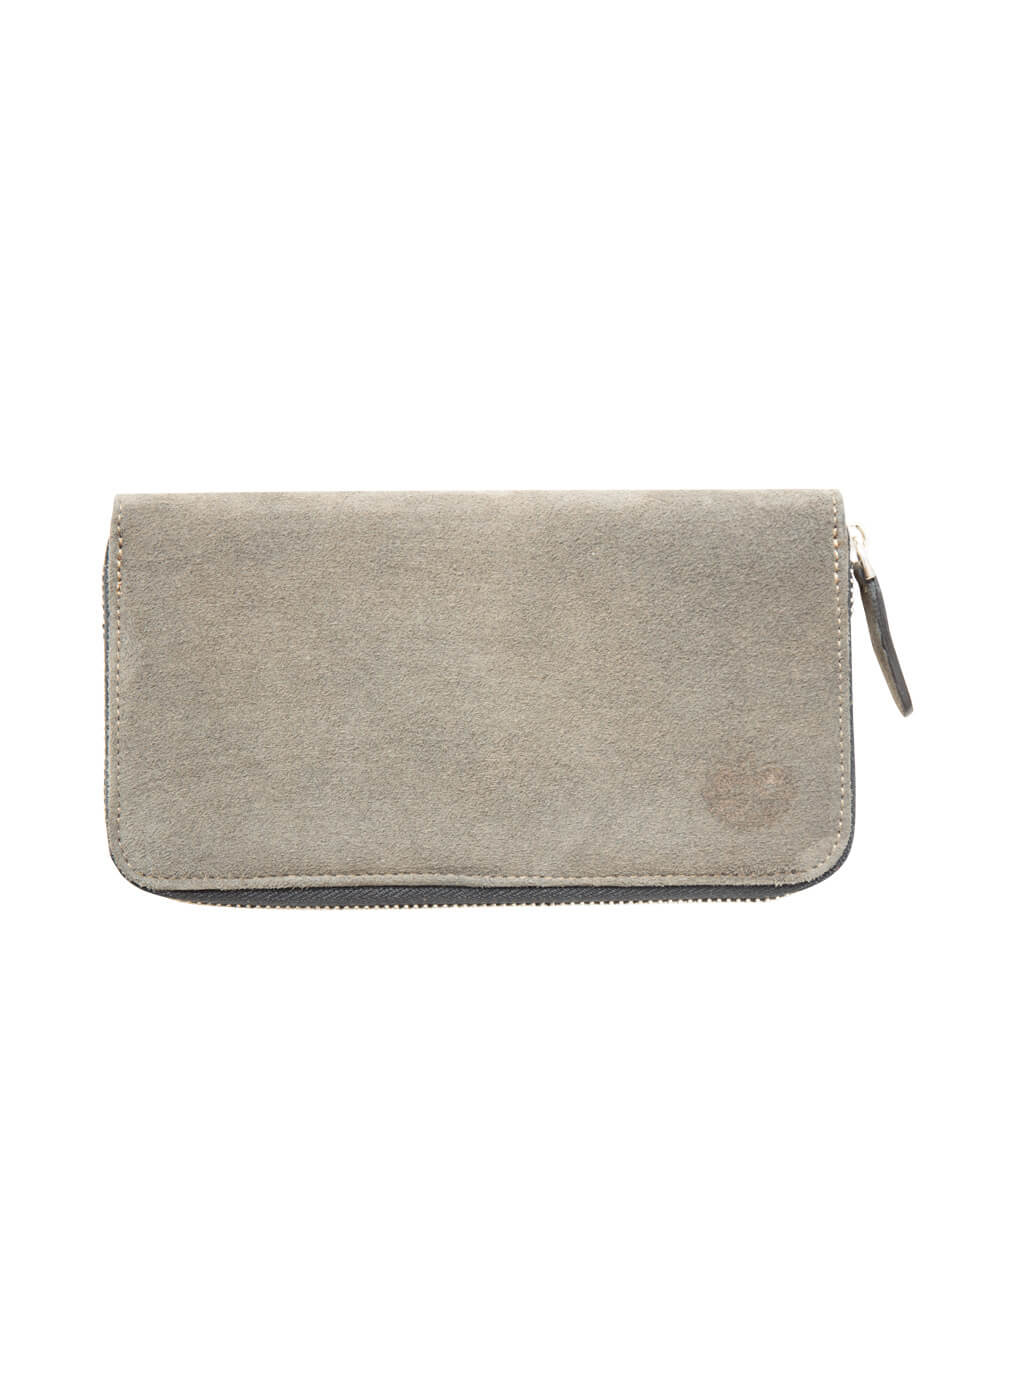 Portemonnaie mit Zipp aus Ziegenleder, grau